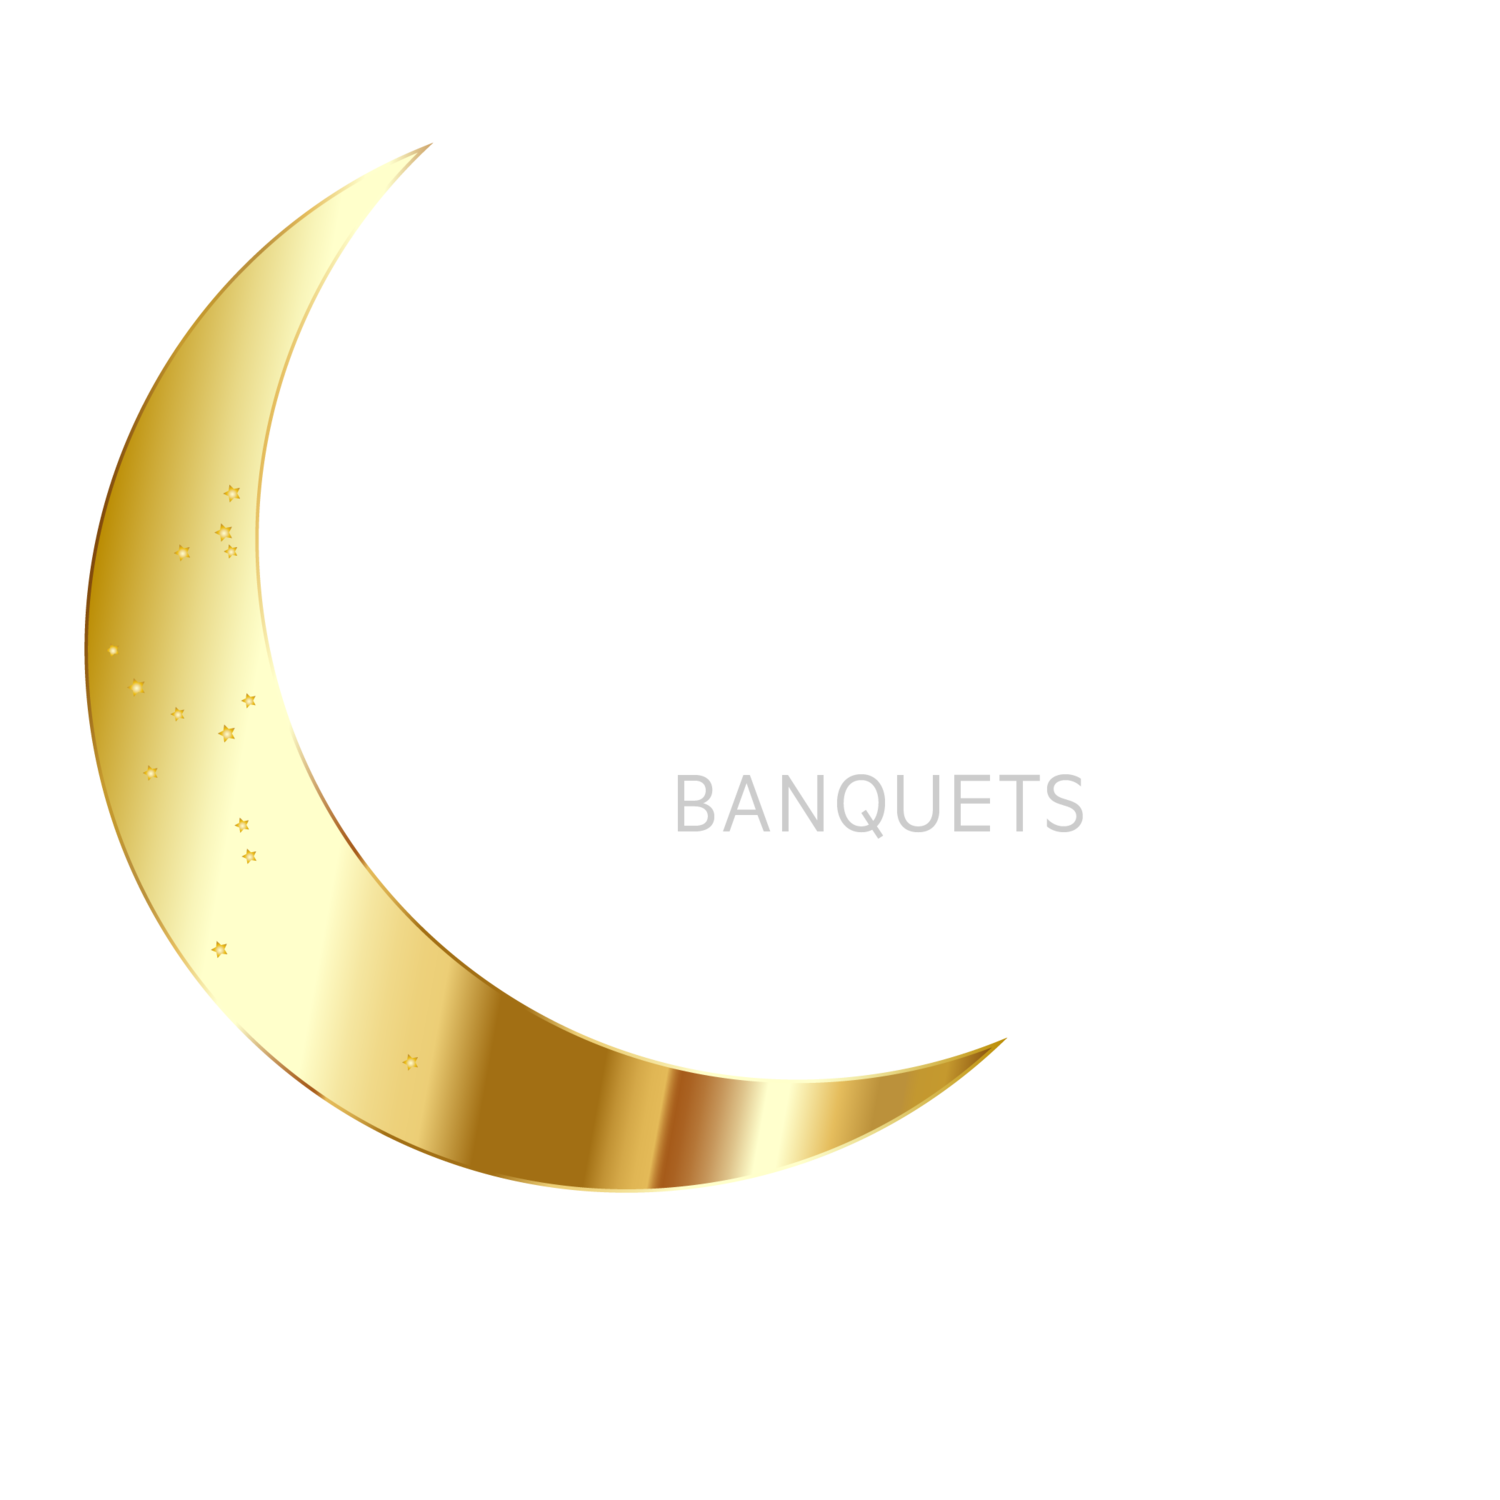 Nova Luna Banquets